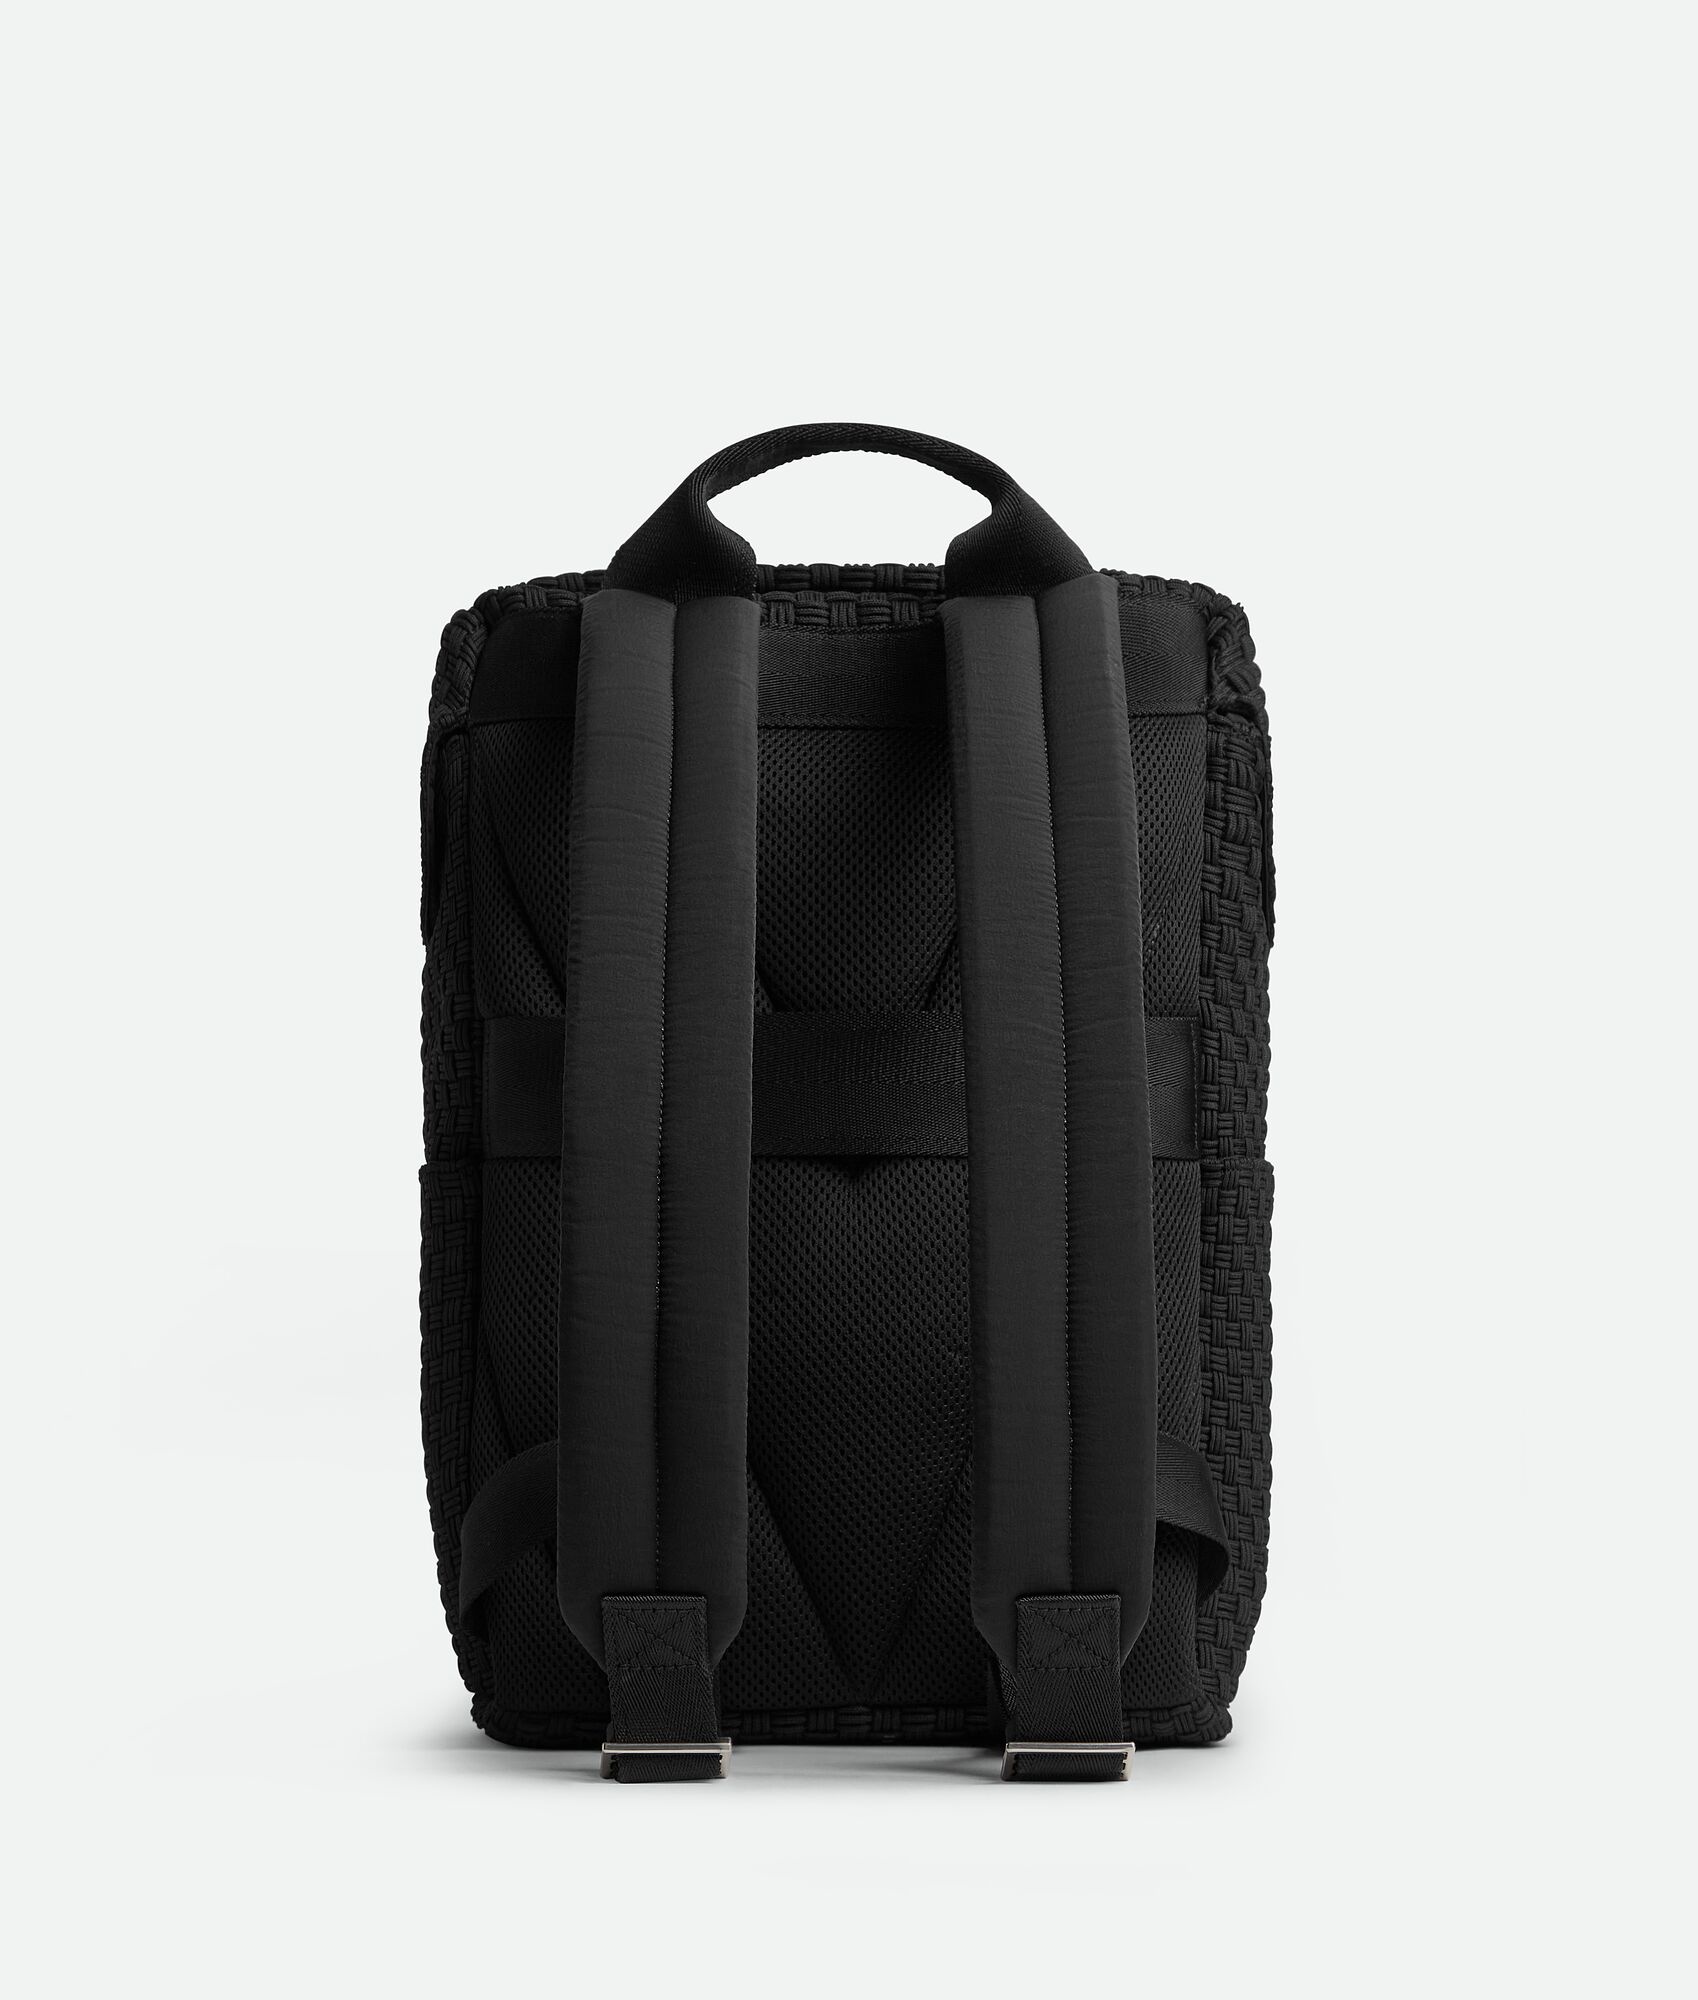 Voyager Backpack - 5